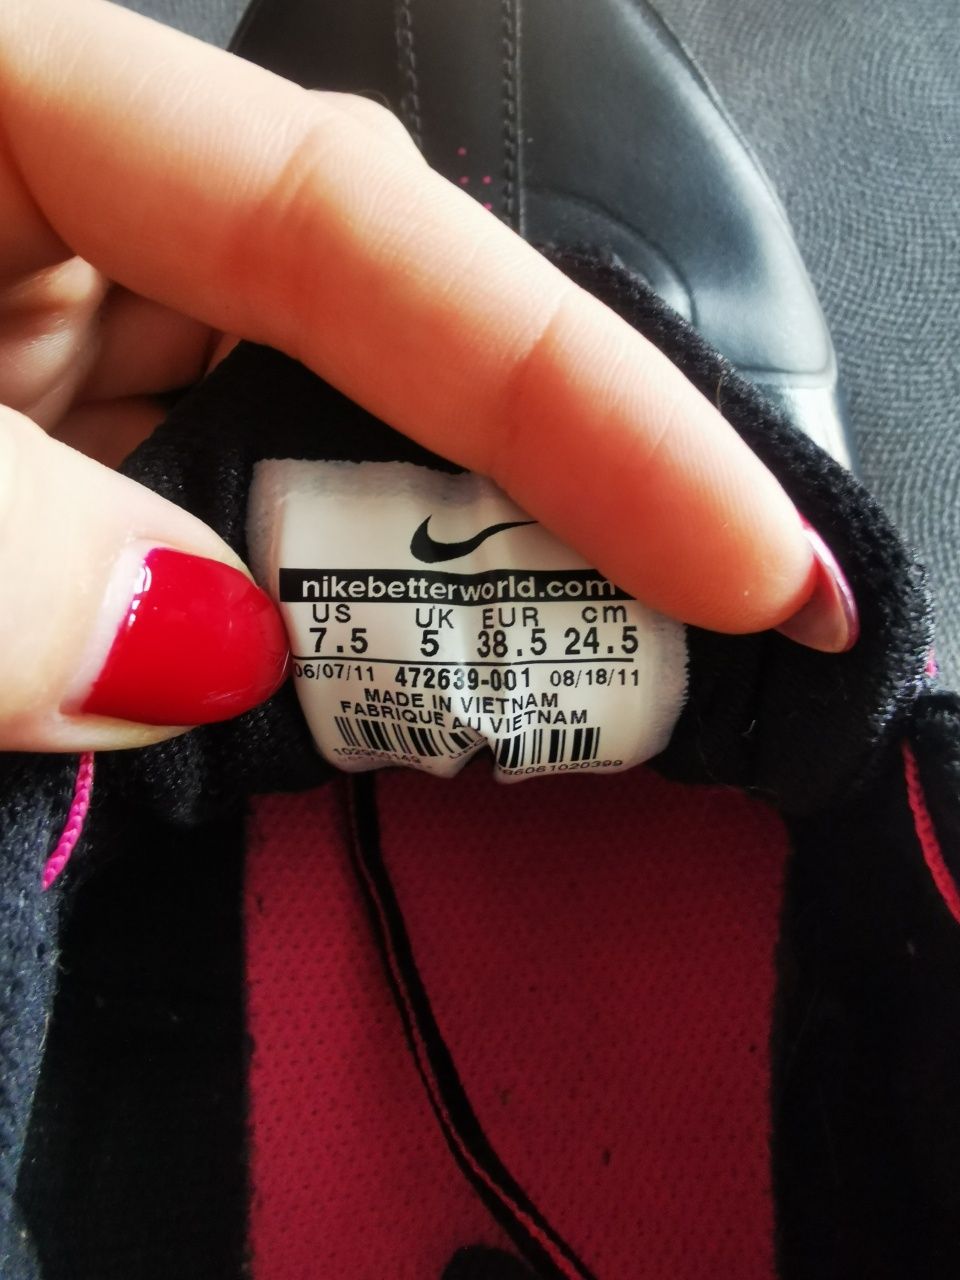 Adidasy Nike, Rom 38,5, bardzo zgrabne, czarno różowe